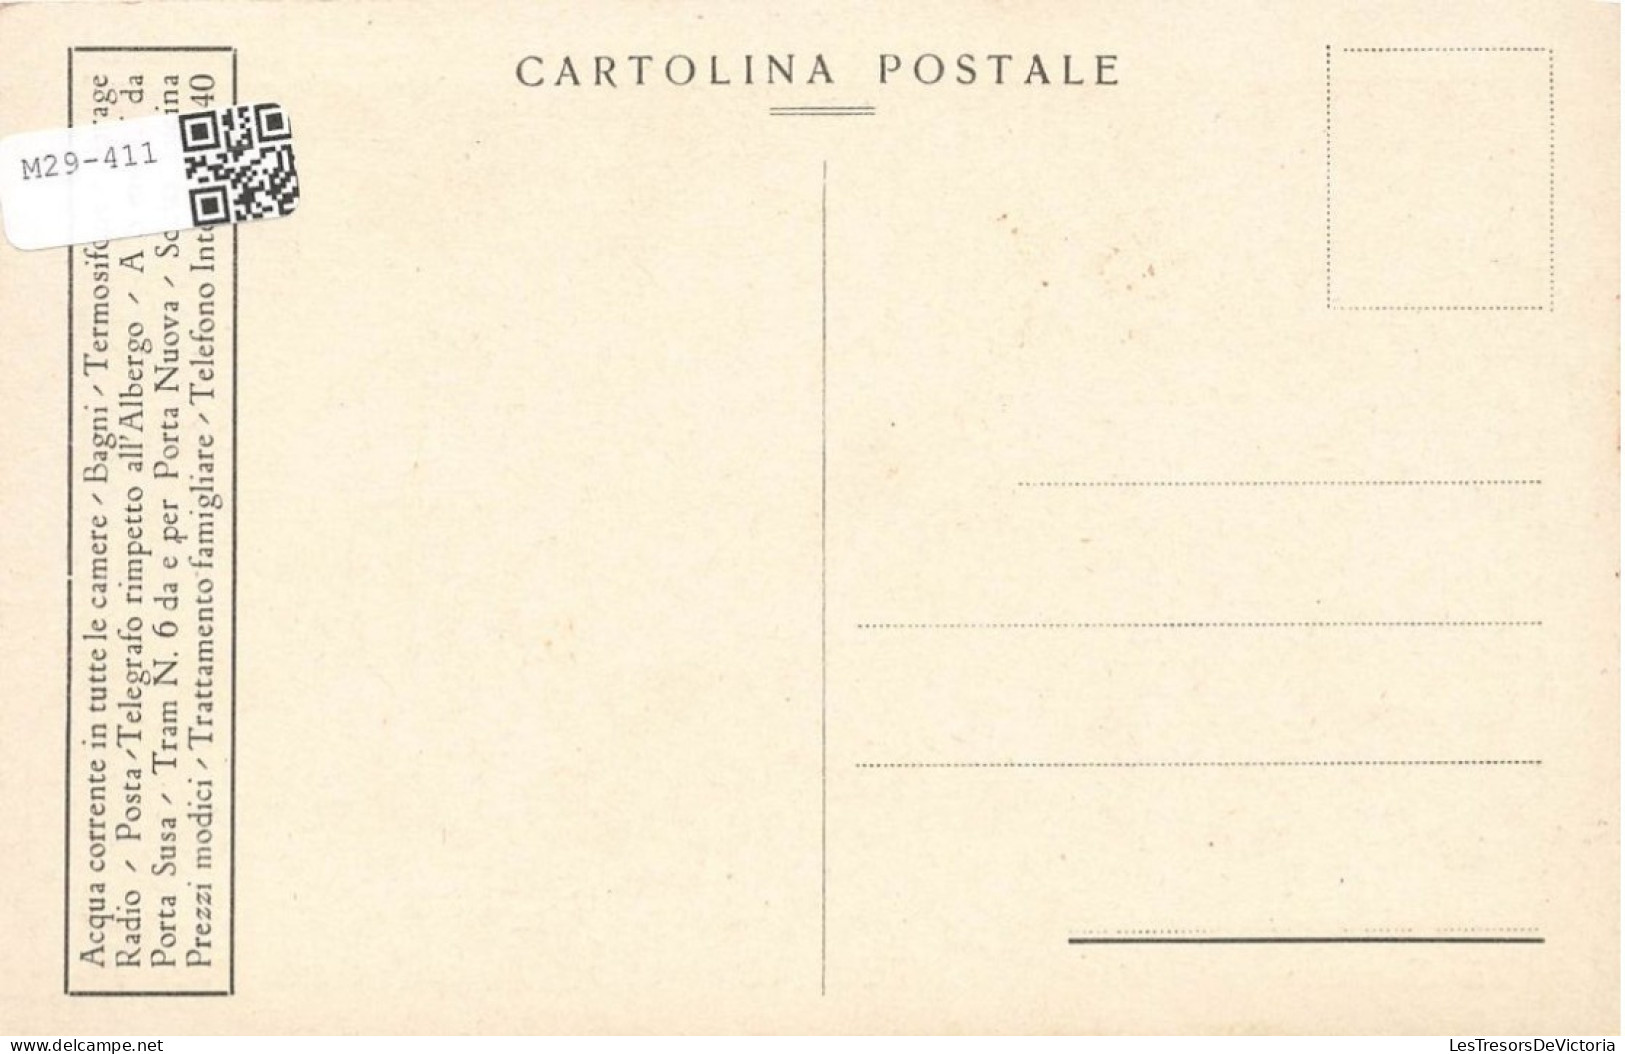 ITALIE - Torino - Via Garibaldi - Alberco - Corso Palestro - Carte Postale Ancienne - Other & Unclassified